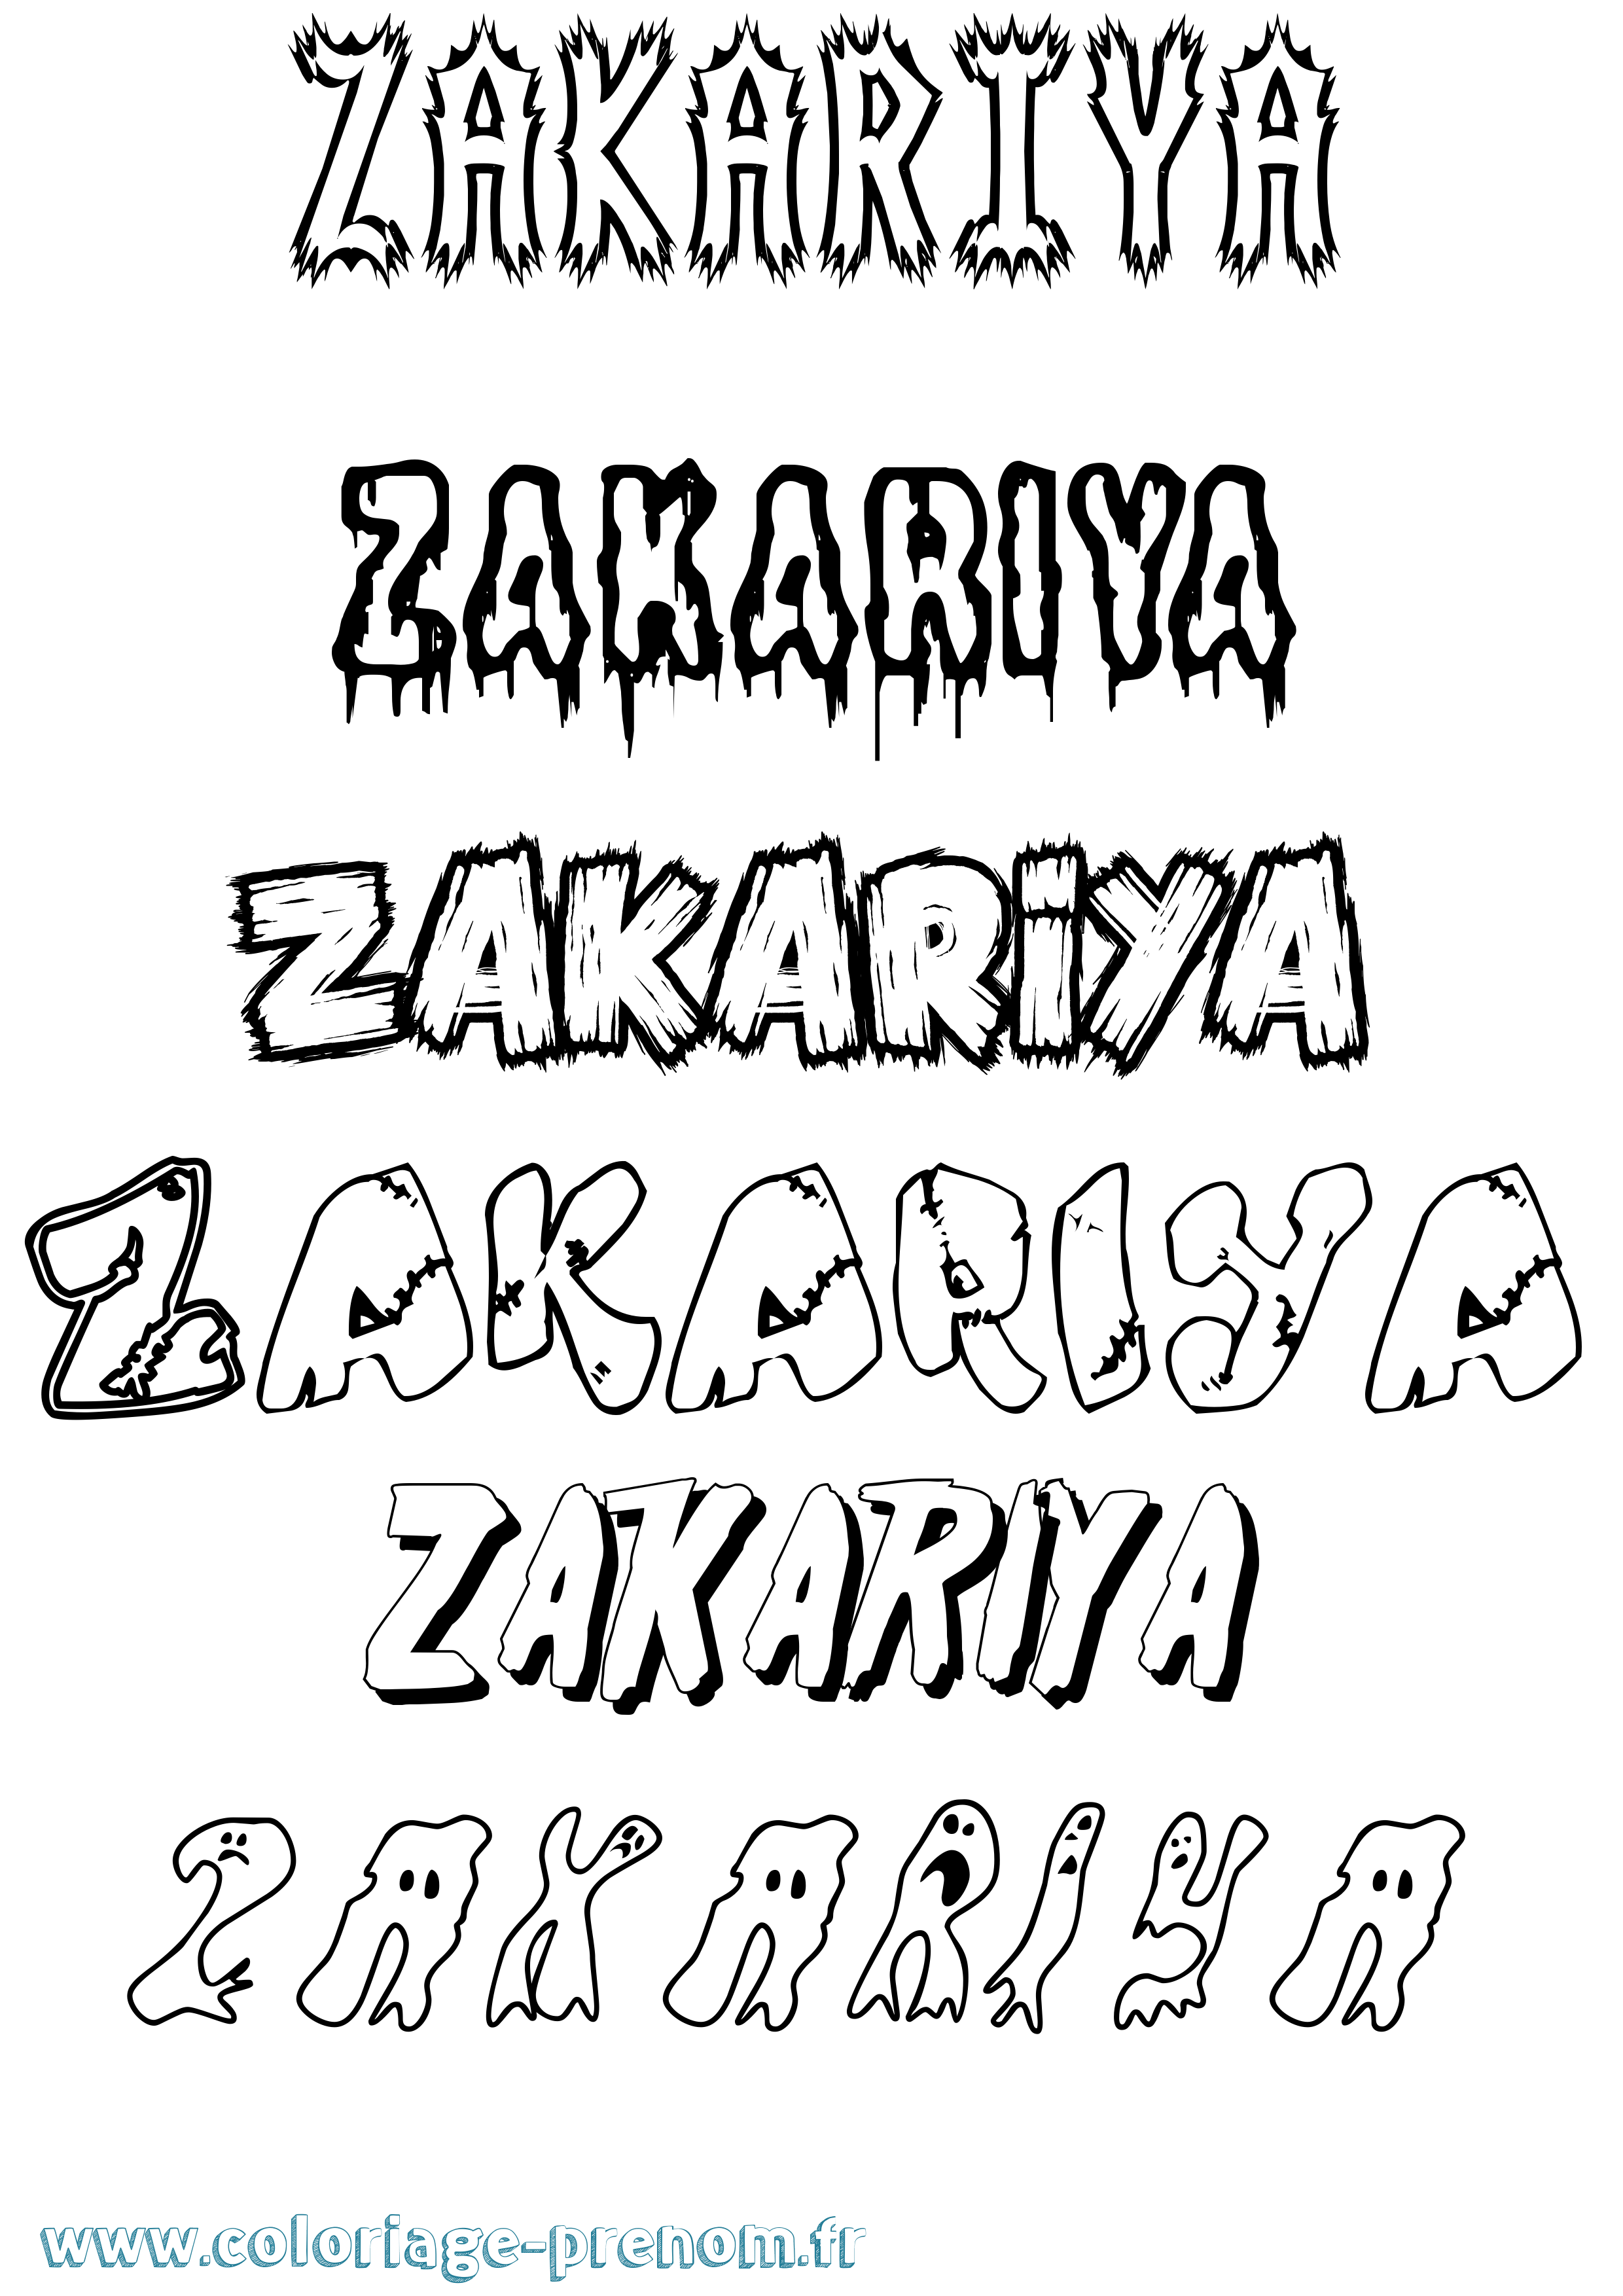 Coloriage prénom Zakariya